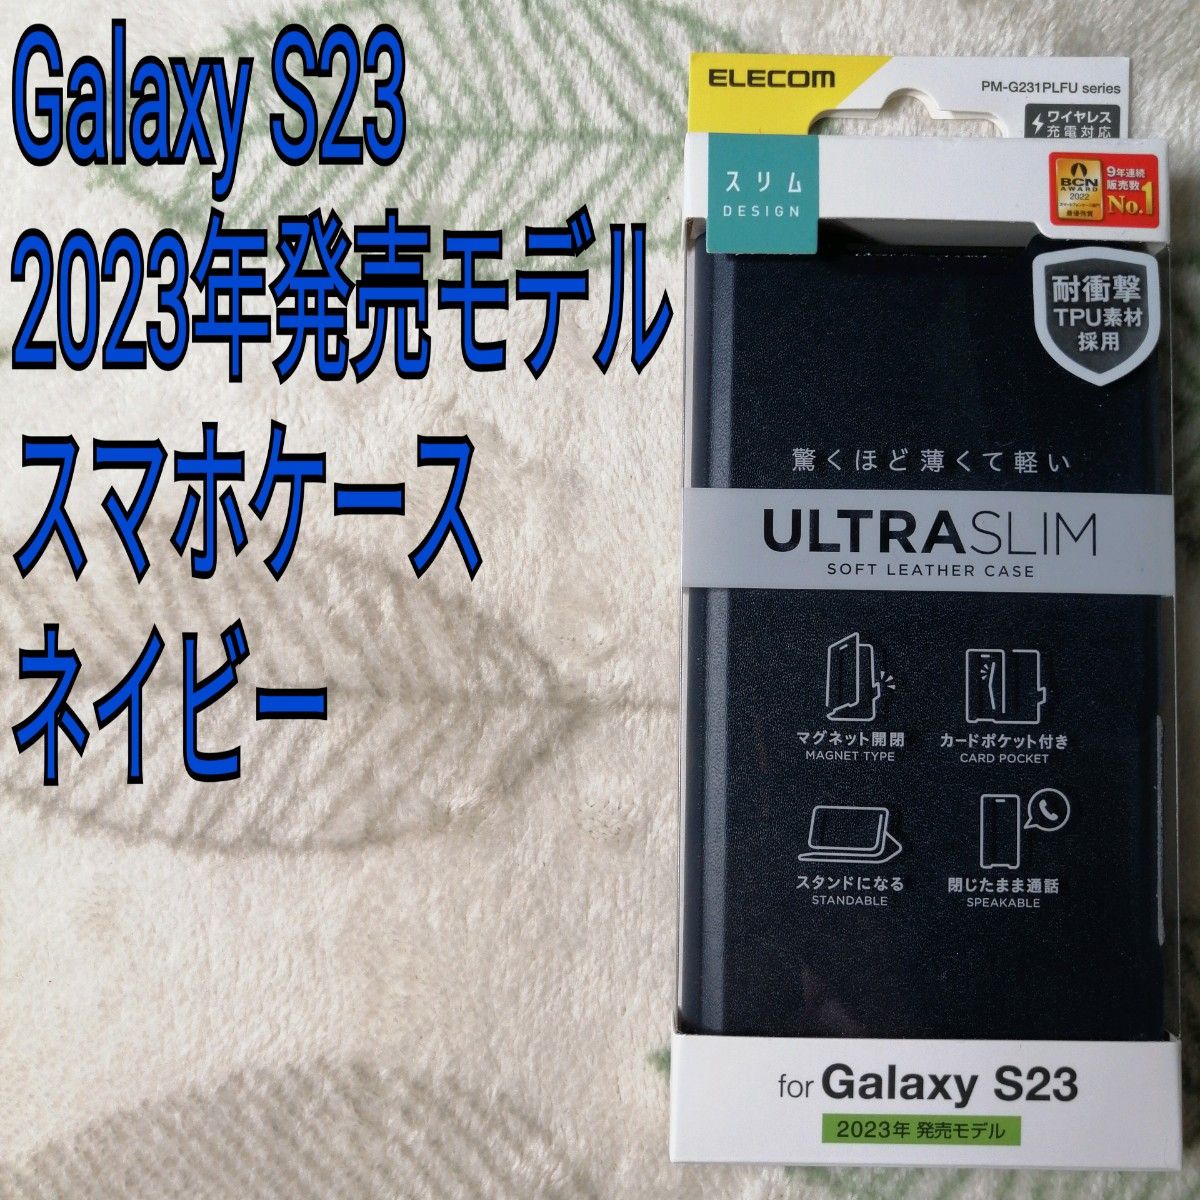 エレコム Galaxy S23 ソフトレザーケース 薄型 超軽量 磁石付 PM-G231PLFUNV